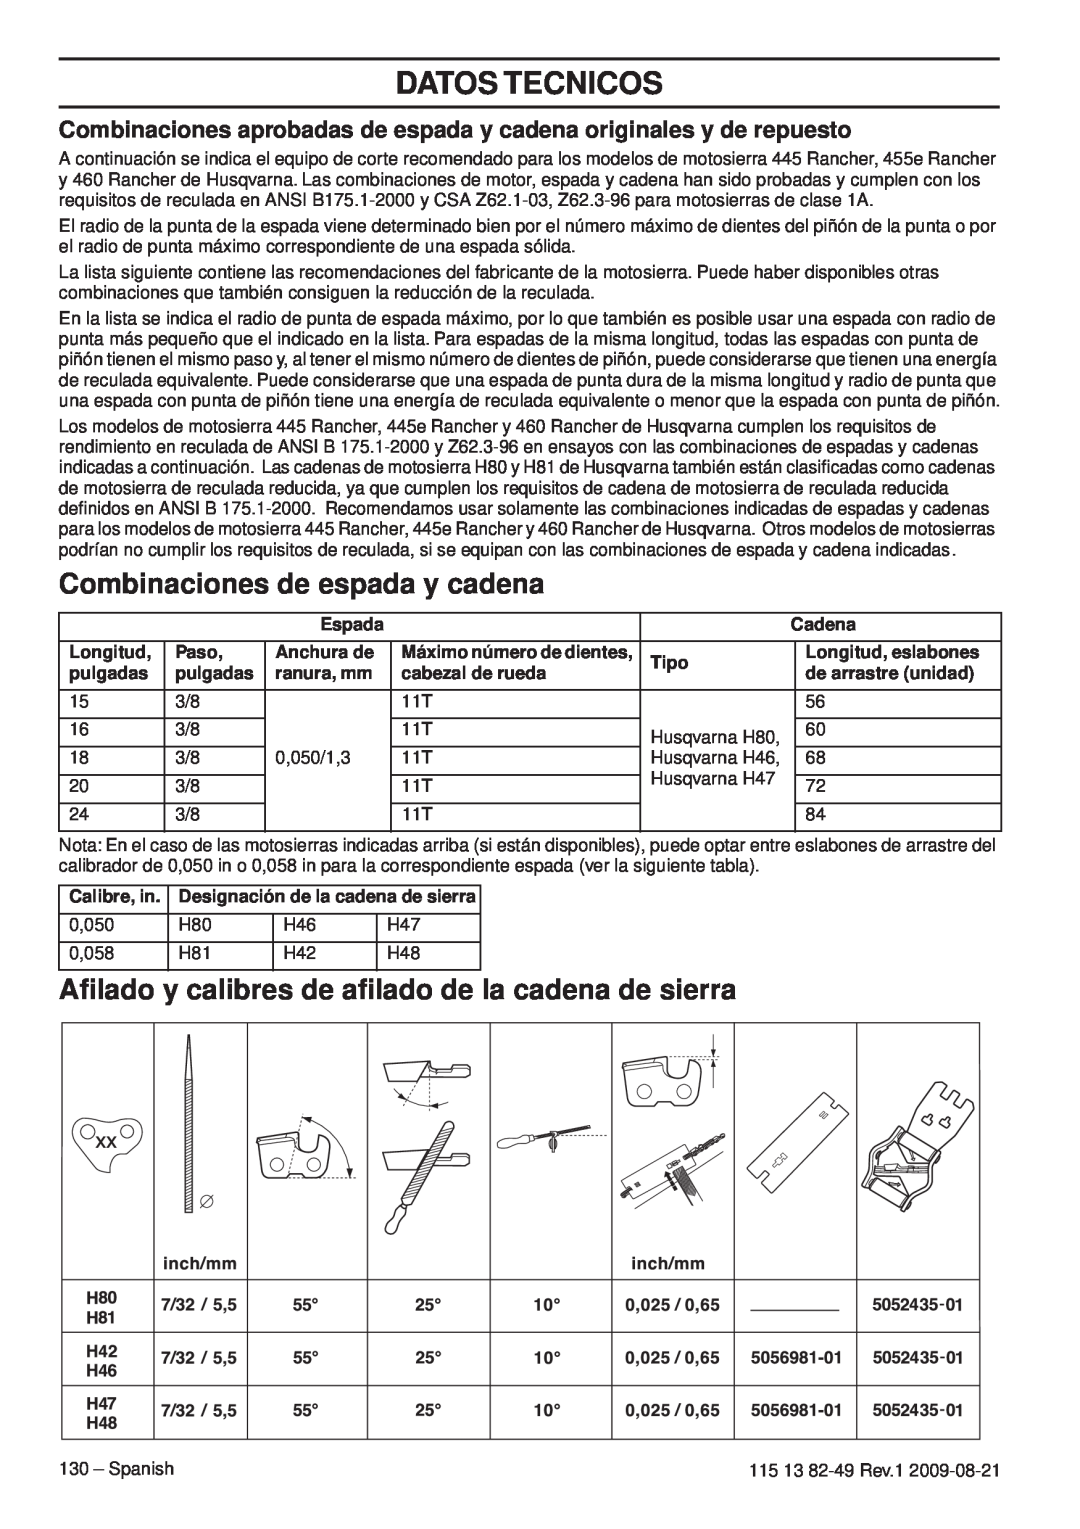 Husqvarna 115 13 82-49 Combinaciones de espada y cadena, Aﬁlado y calibres de aﬁlado de la cadena de sierra, Longitud 